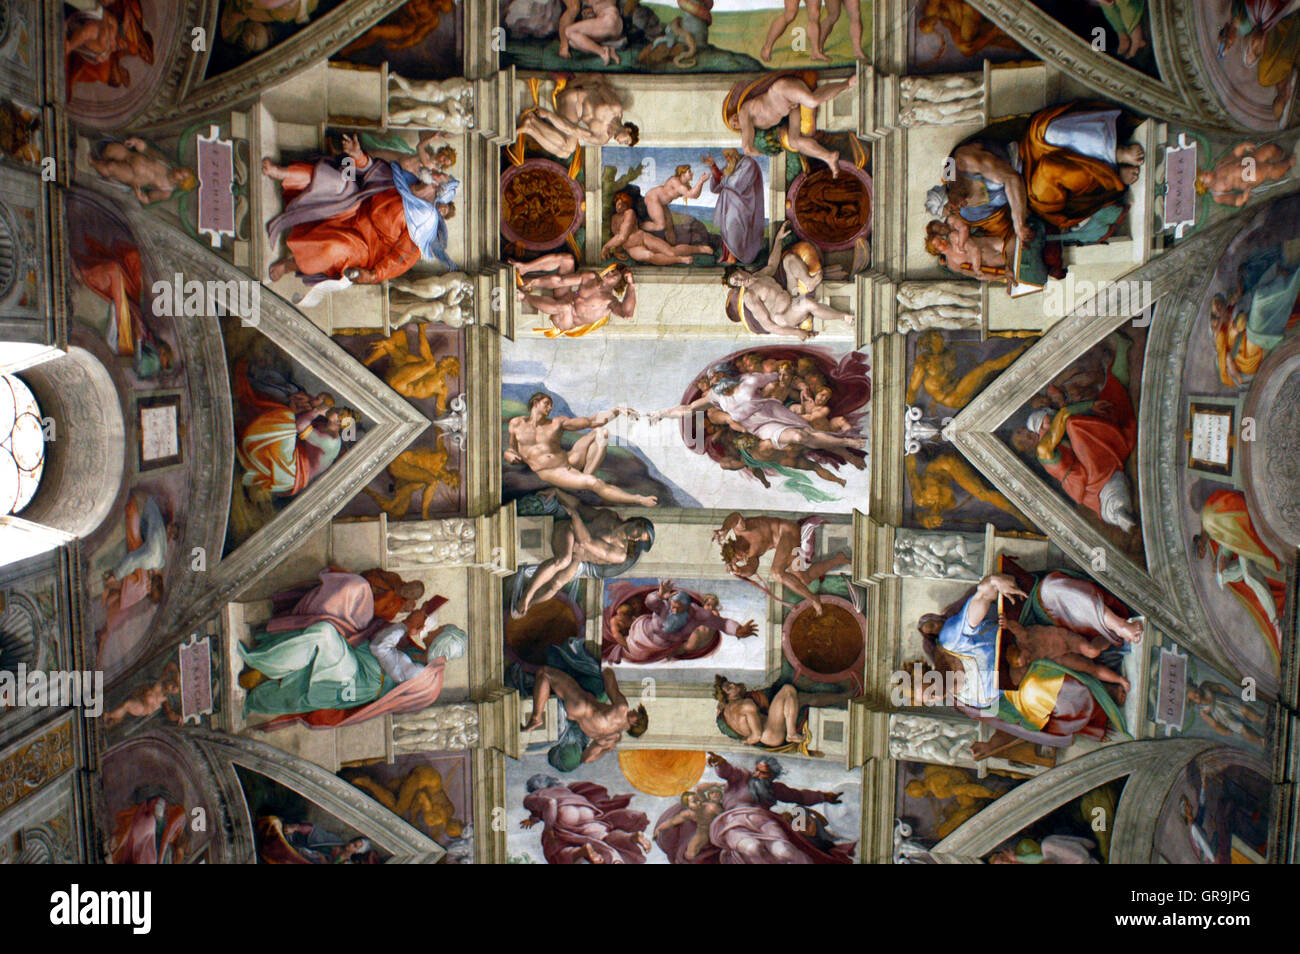 Plafond de la Chapelle Sixtine, musée du Vatican Rome Italie.La création d'Adam par Michel-Ange sur le plafond de la chapelle Sixtine au Musée du Vatican. Banque D'Images